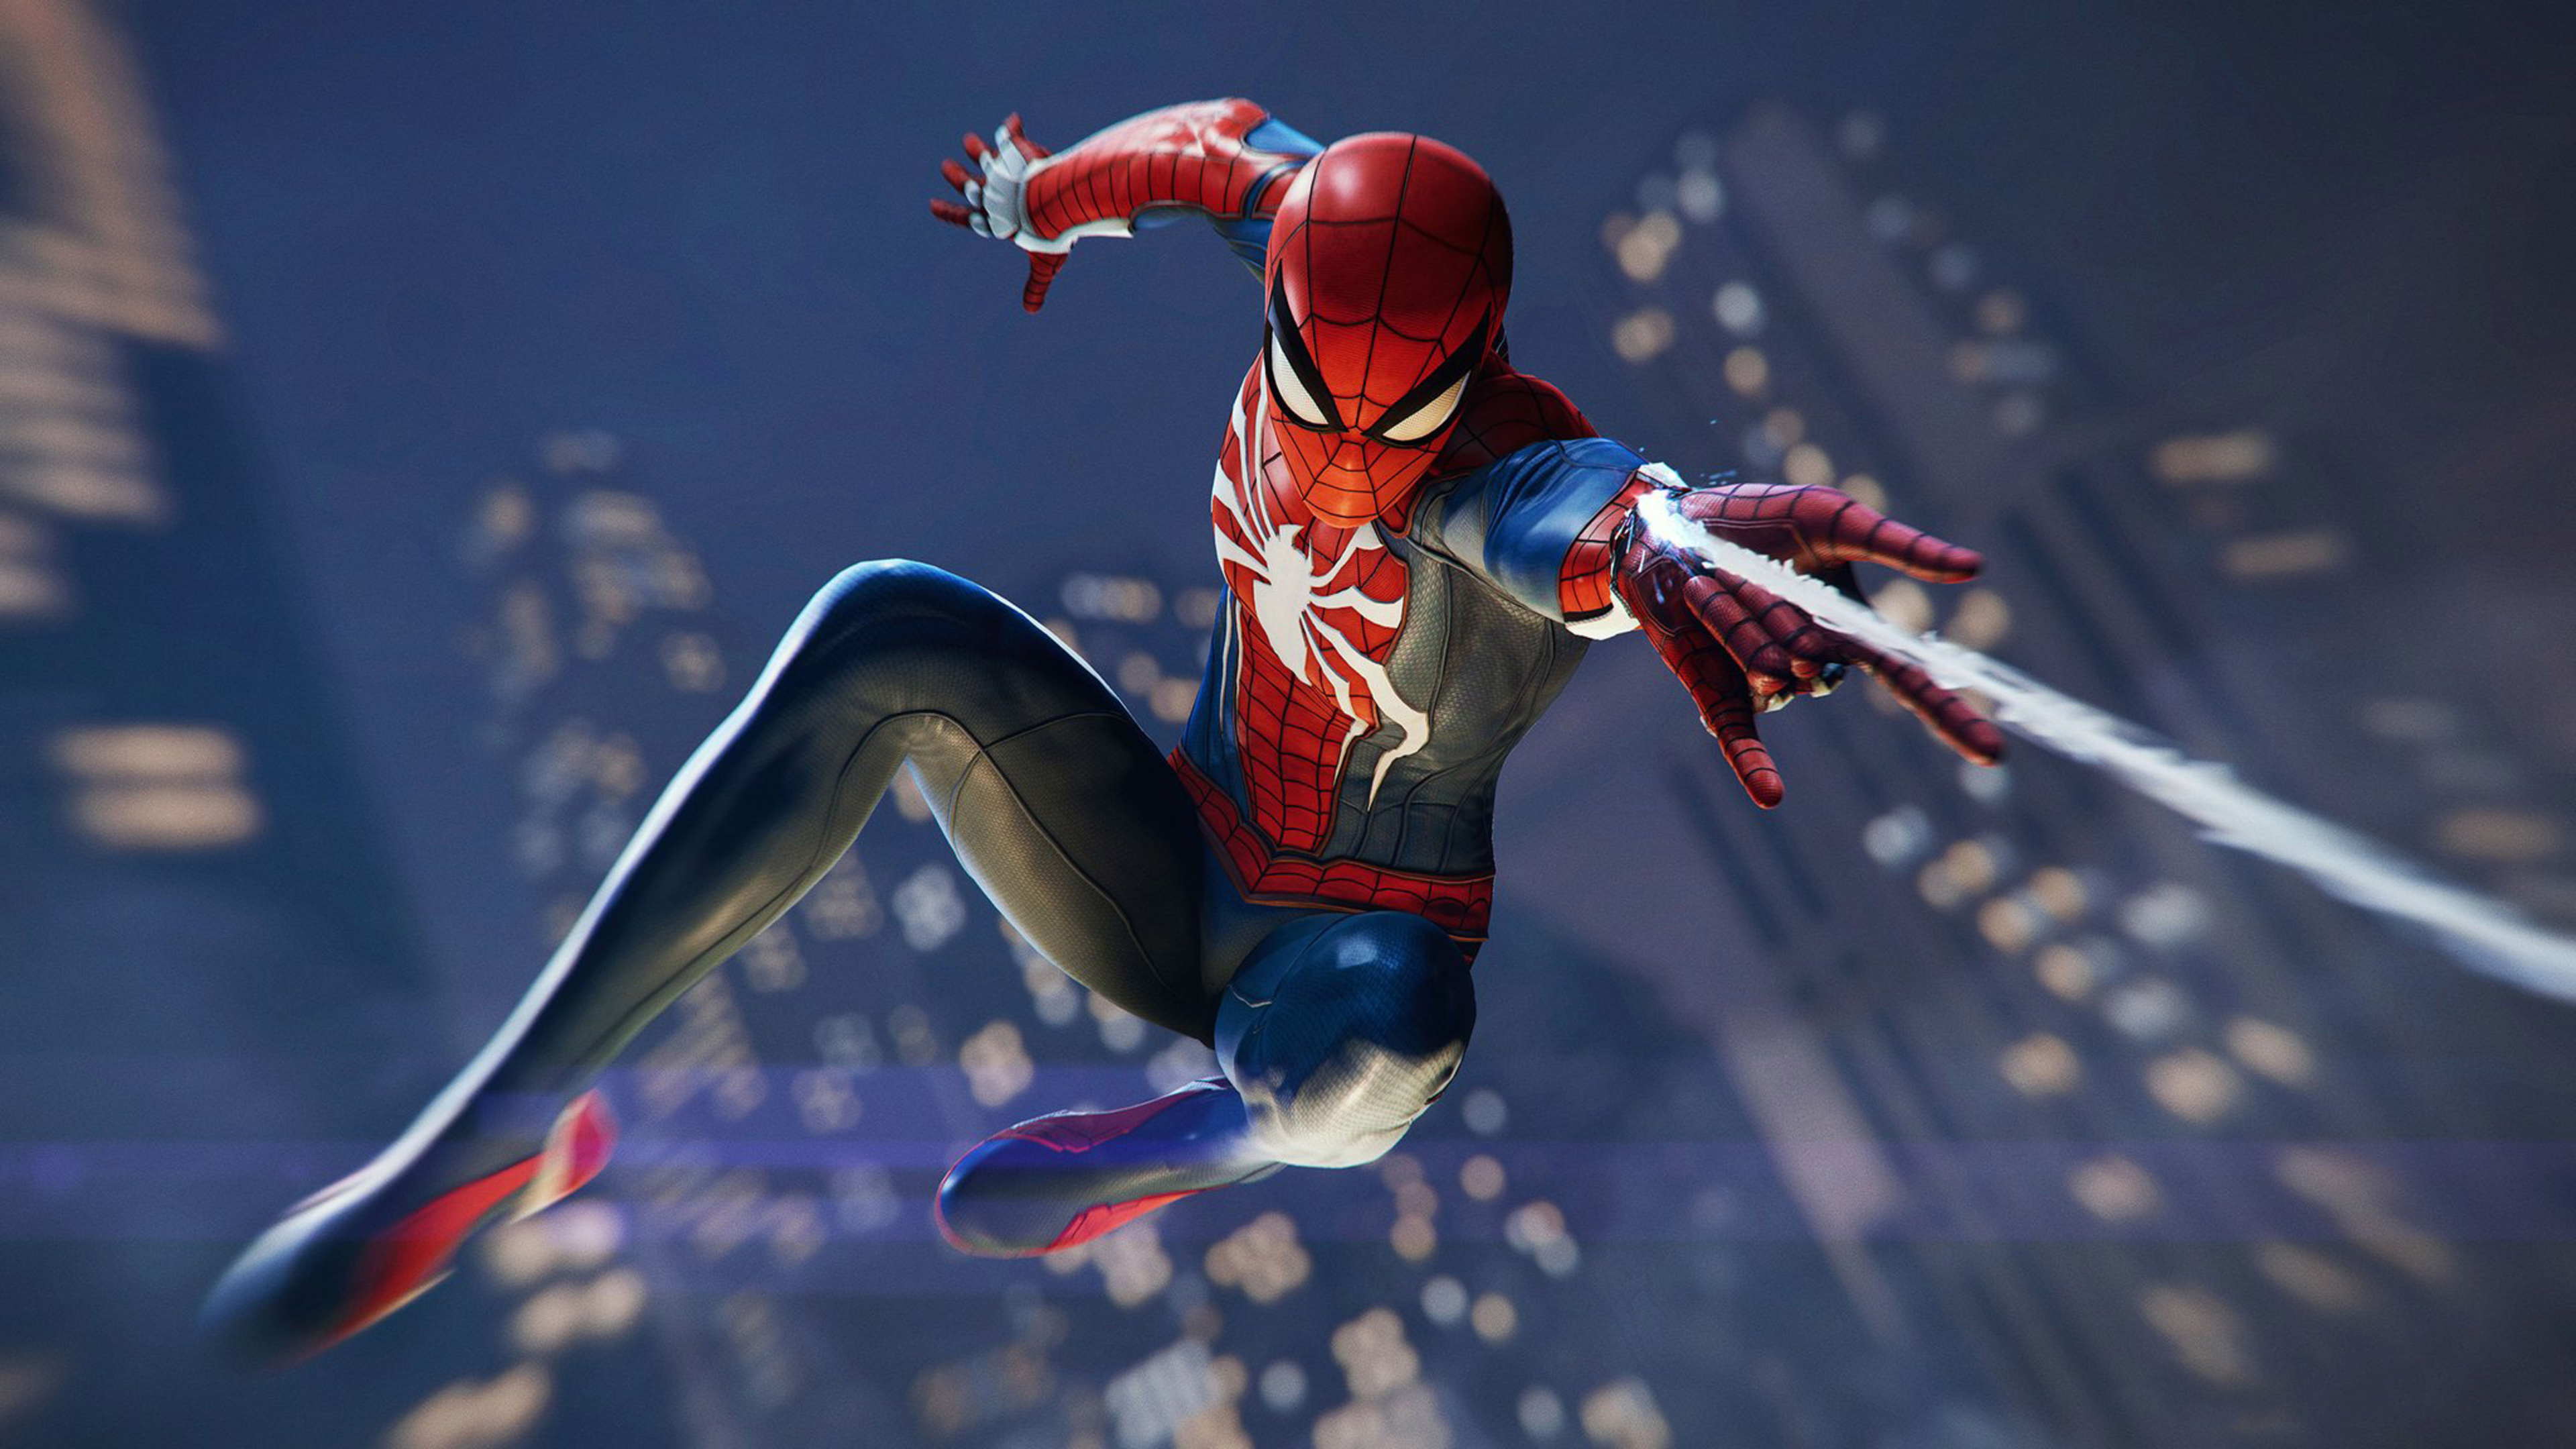 Download background spider man (ps4), spider man, video game